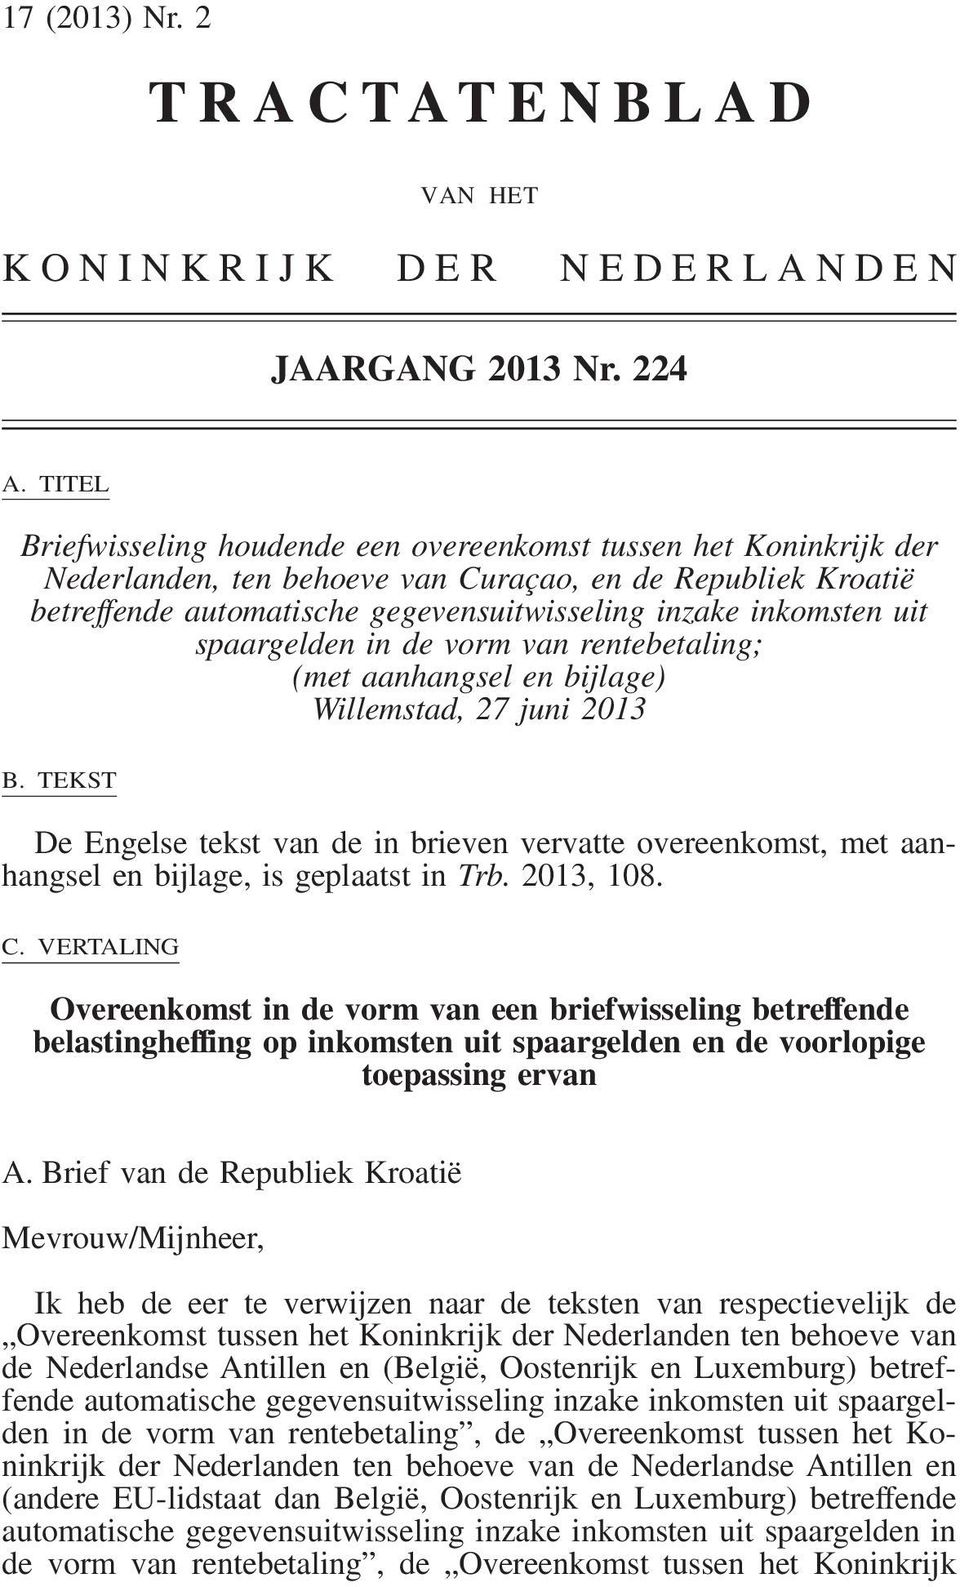 aanhangsel en bijlage) Willemstad, 27 juni 2013 B. TEKST De Engelse tekst van de in brieven vervatte overeenkomst, met aanhangsel en bijlage, is geplaatst in Trb. 2013, 108. C.